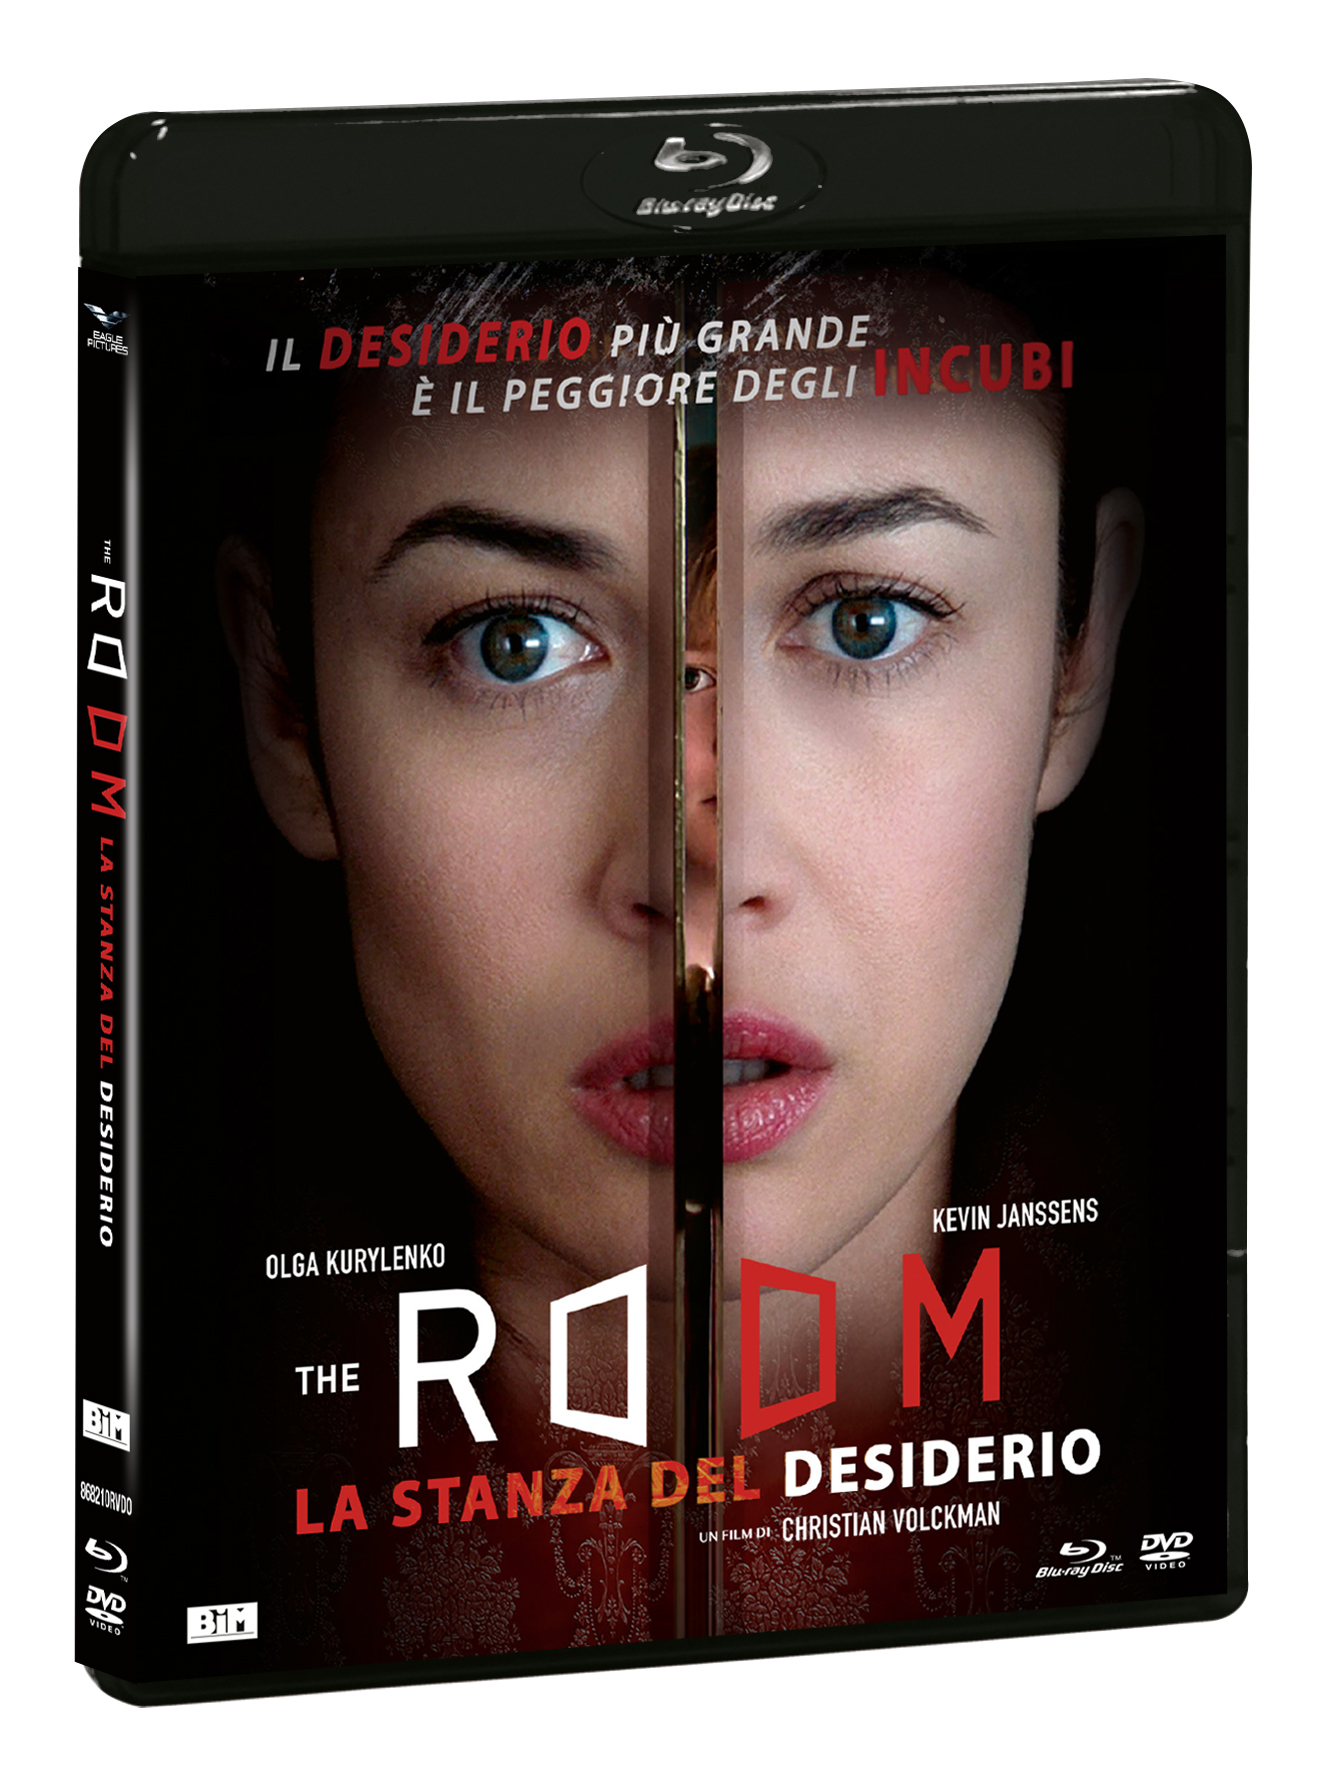 ROOM (THE) - LA STANZA DEL DESIDERIO (BLU-RAY+DVD)